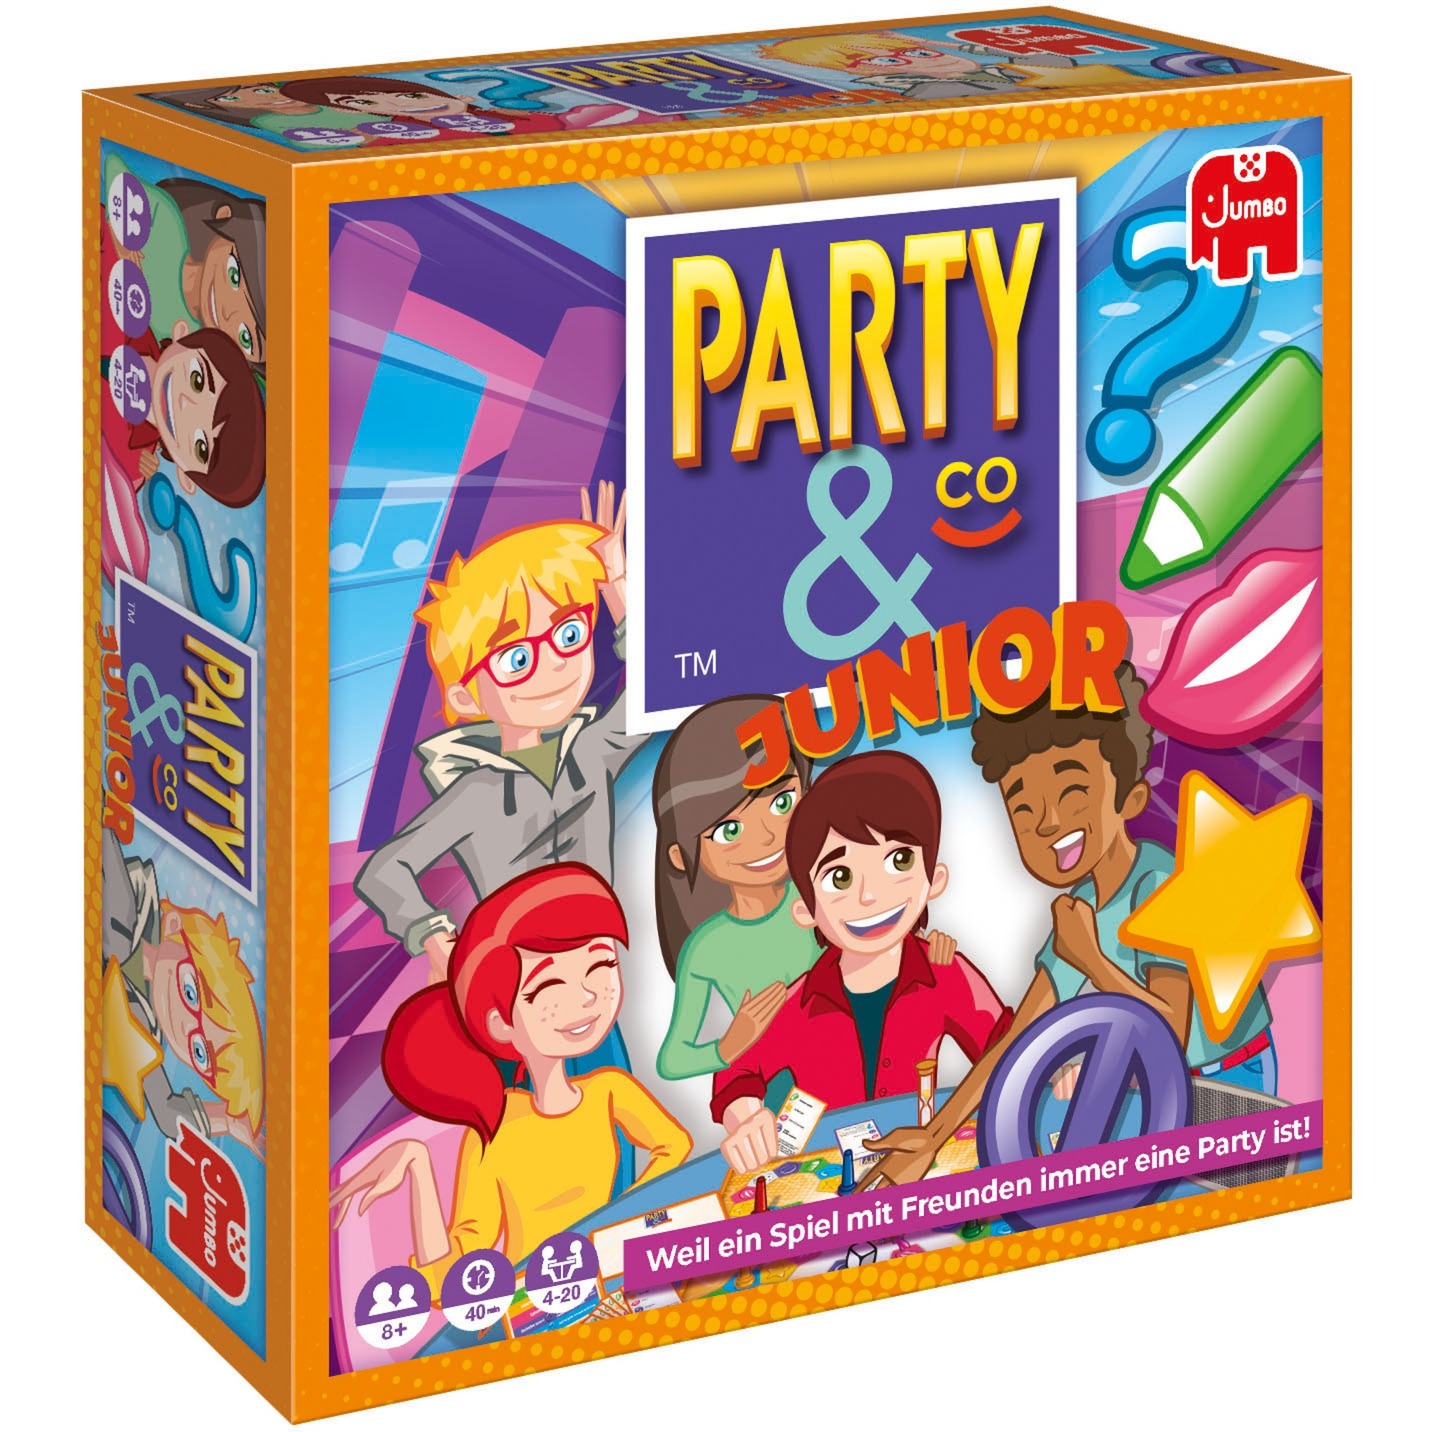 Image of Alternate - Party & Co. Junior, Partyspiel online einkaufen bei Alternate